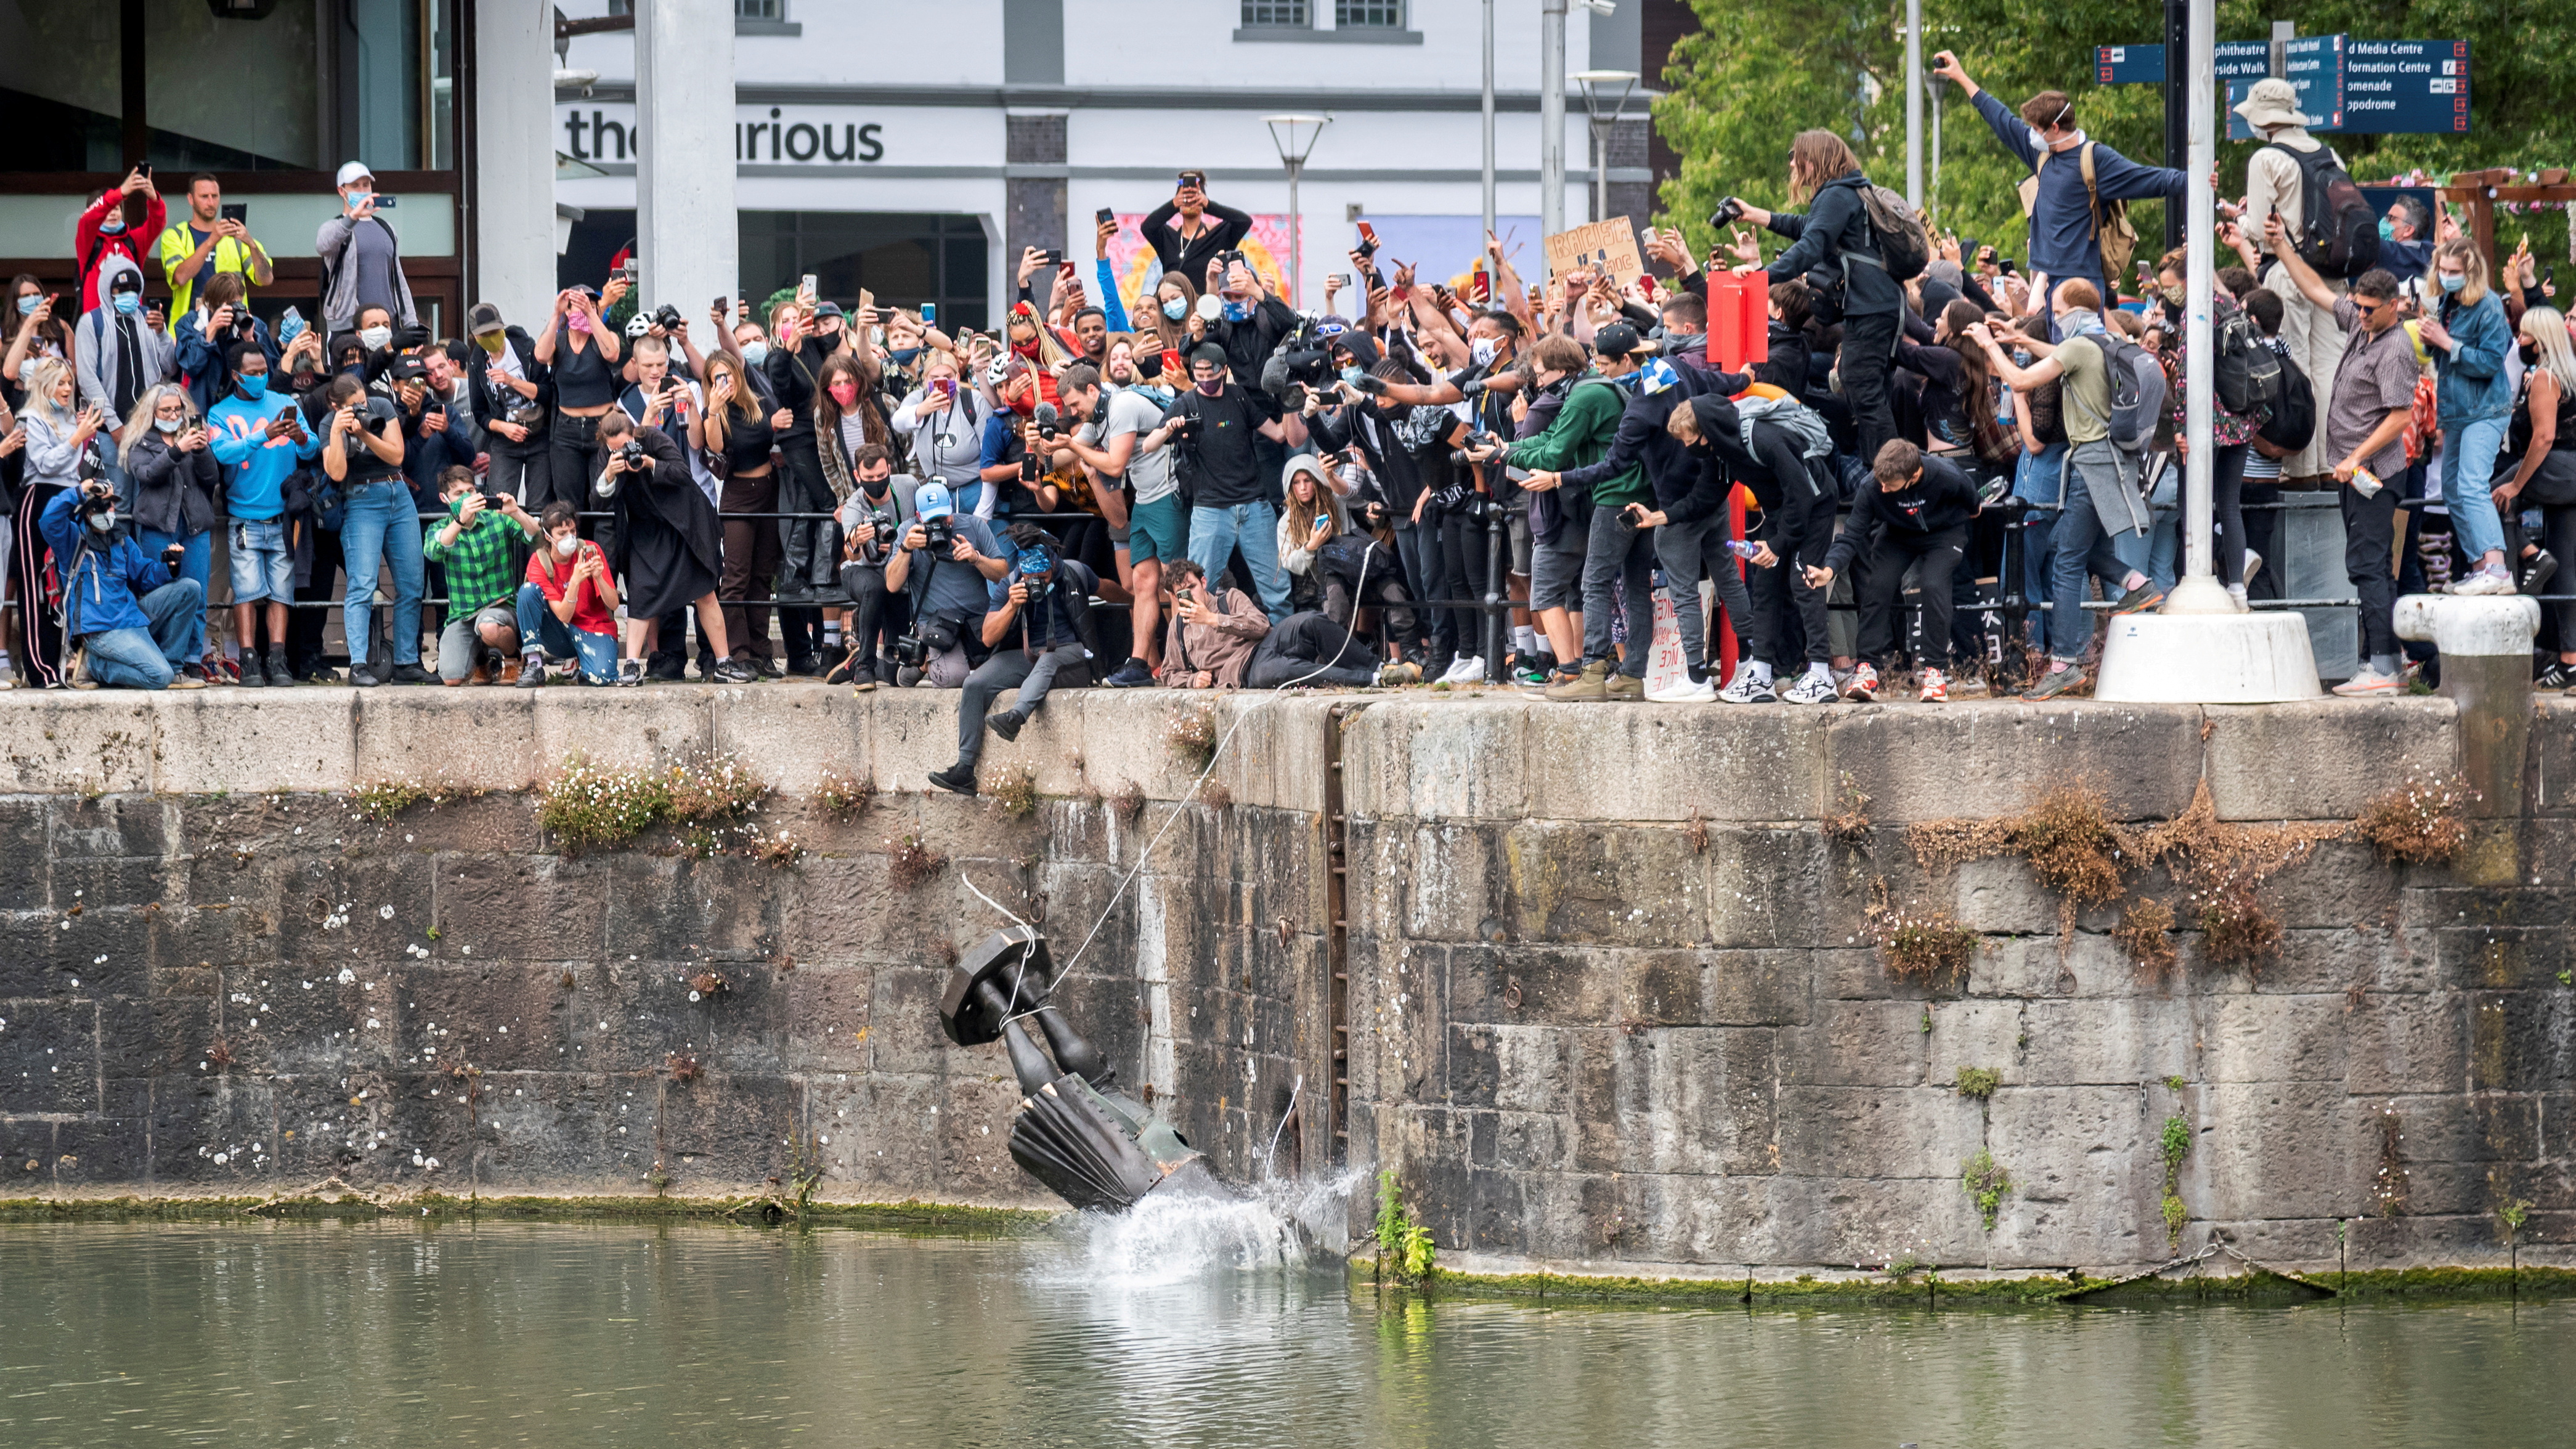 Manifestantes tiran al agua la estatua de Edward Colston durante una protesta contra la desigualdad racial tras la muerte de George Floyd. Gran Bretaña, 7 de junio de 2020 (Foto: Keir Gravil / REUTERS)